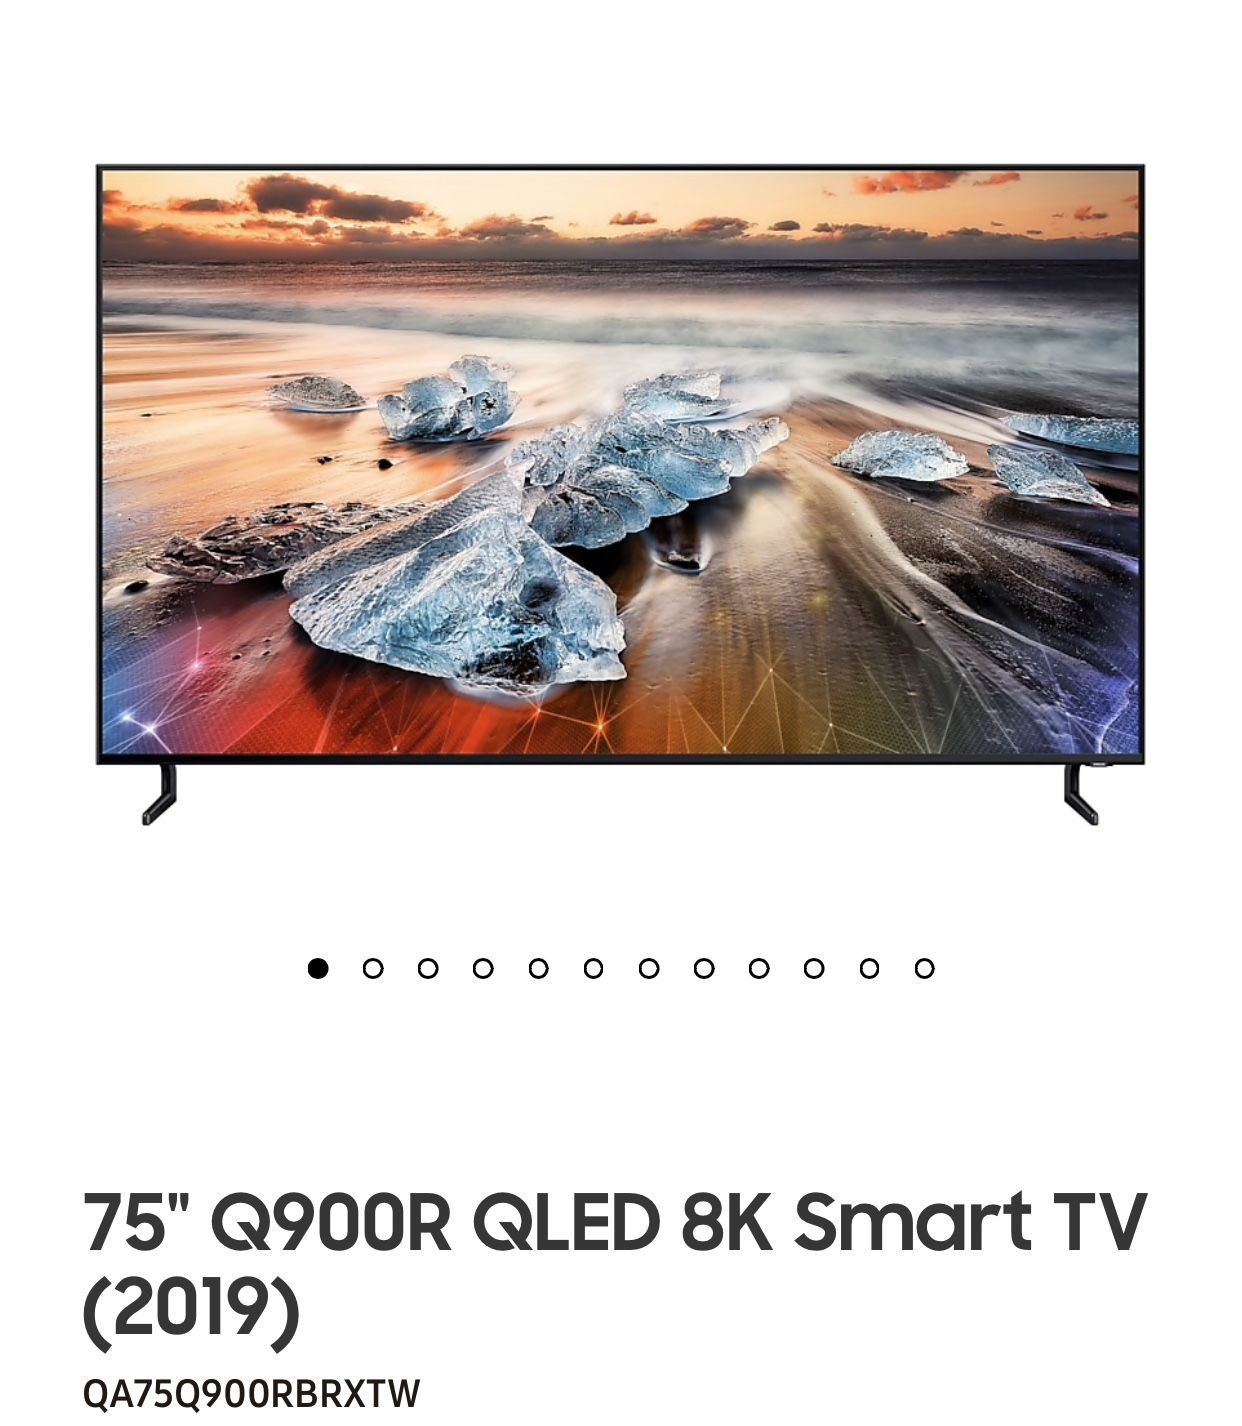 75 Q900R 8K QLED TV BRAND NEW